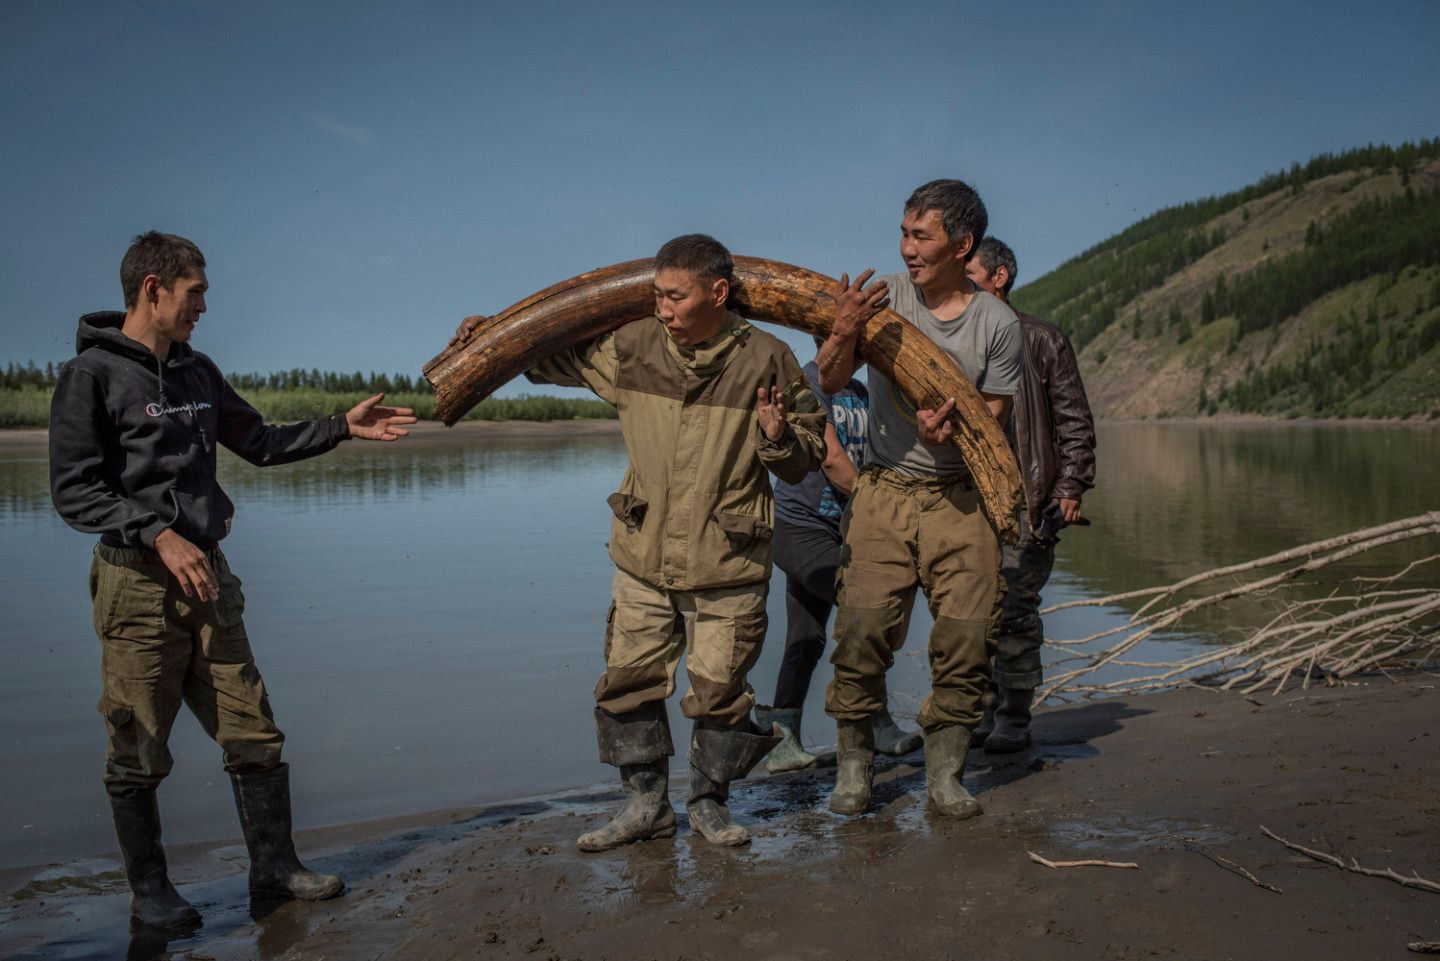 District de Verkhoyansk, République de Sakha (Yakoutie), Russie, juillet 2017. Ces chasseurs de mammouths viennent de découvrir une défense en creusant un tunnel à l'aide de pompes à eau bricolées avec des moteurs de motoneige. Cette année-là, le prix du kilo d'ivoire était de 60 $. Une défense couvre donc à peu près leurs frais d'expédition. Un peu plus tard, l'un des chasseurs m'a dit qu'ils en avaient trouvé une deuxième.